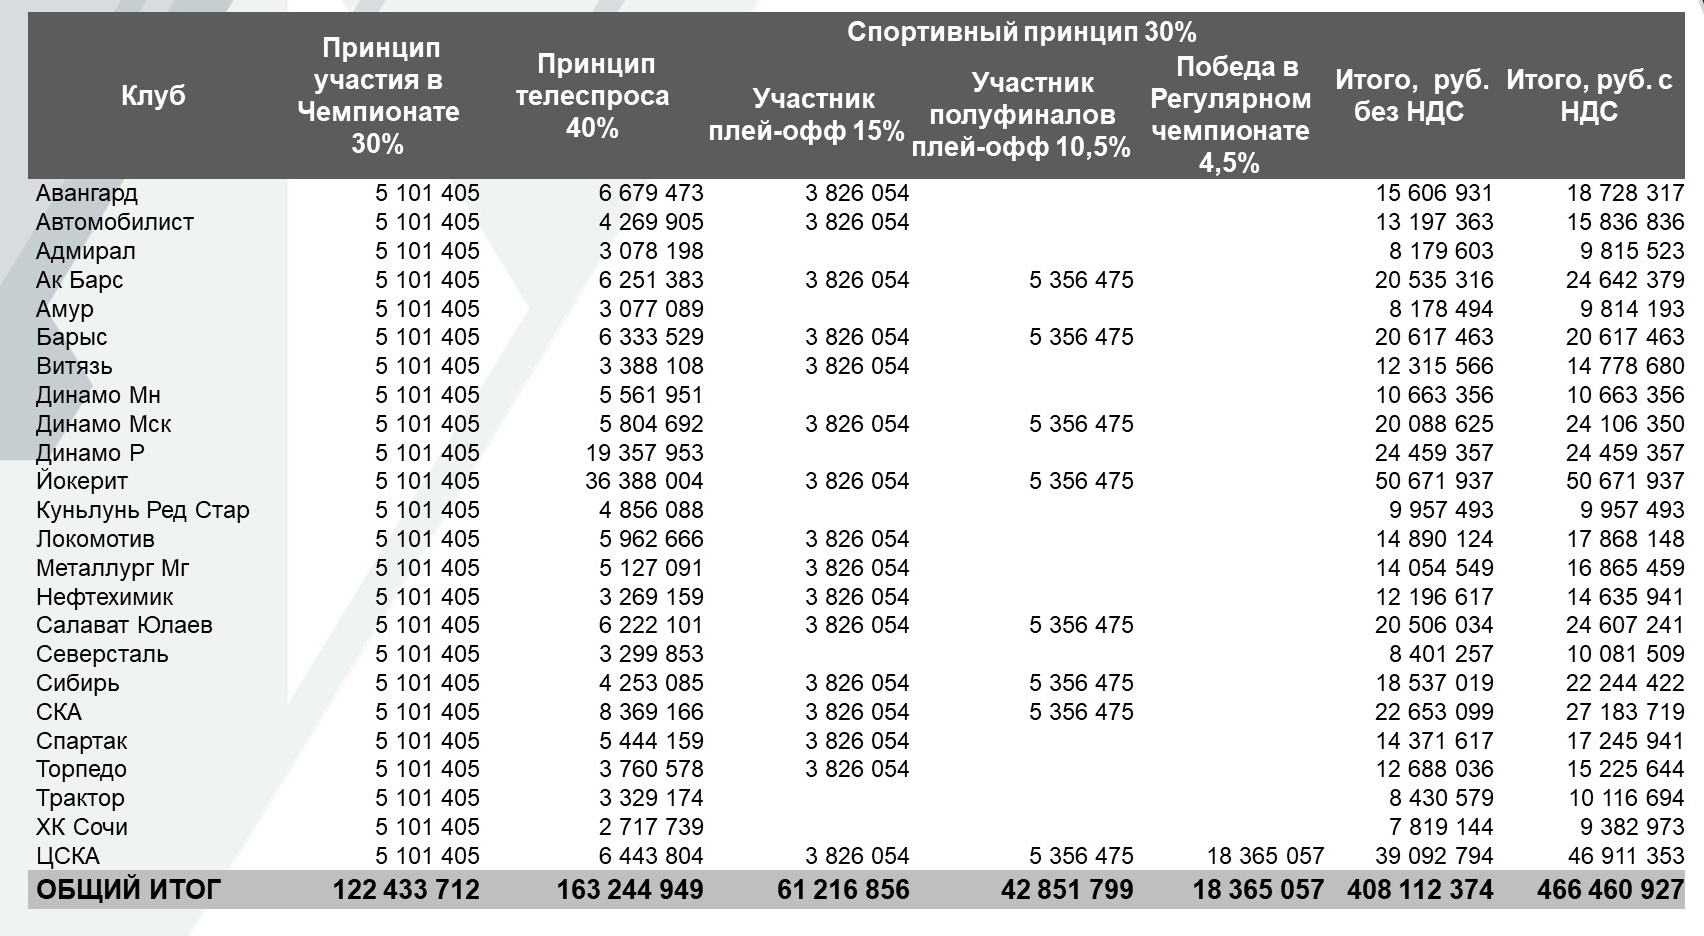 КХЛ распределила между клубами доходы от продажи телеправ за прошлый сезон